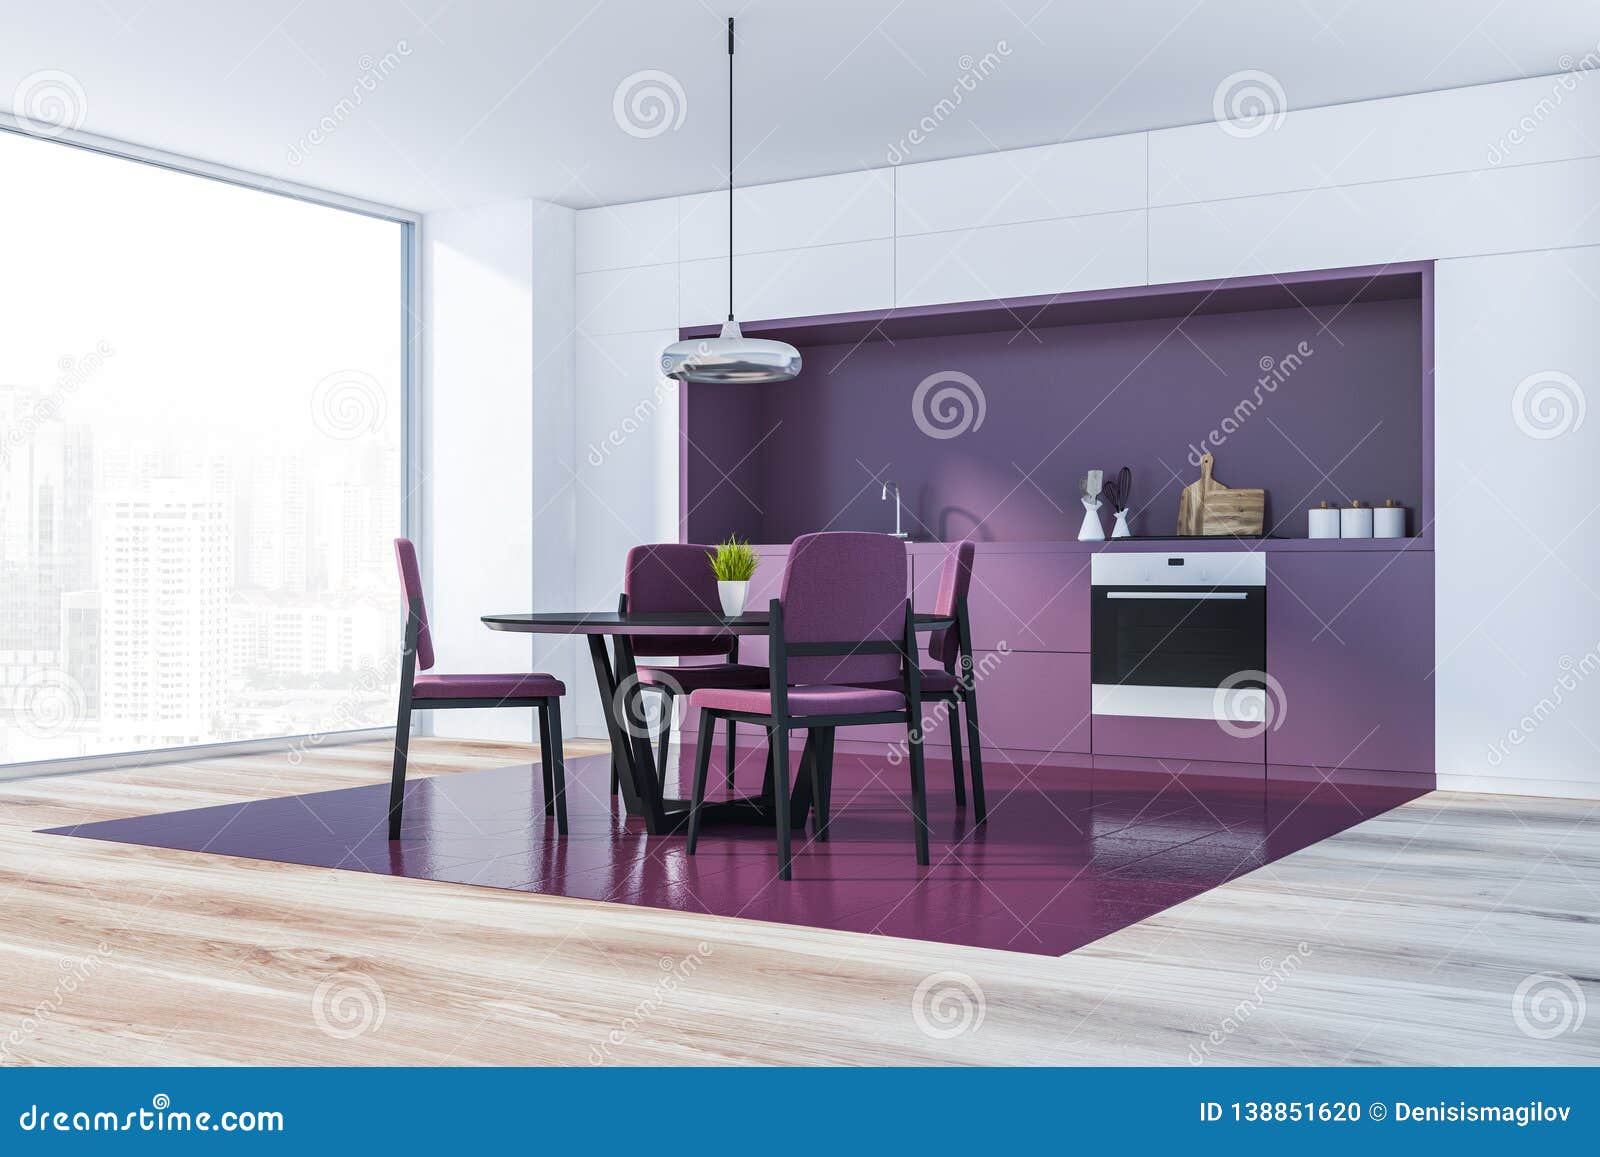 Purple Kitchen Corner With Table Stock Illustration Illustration